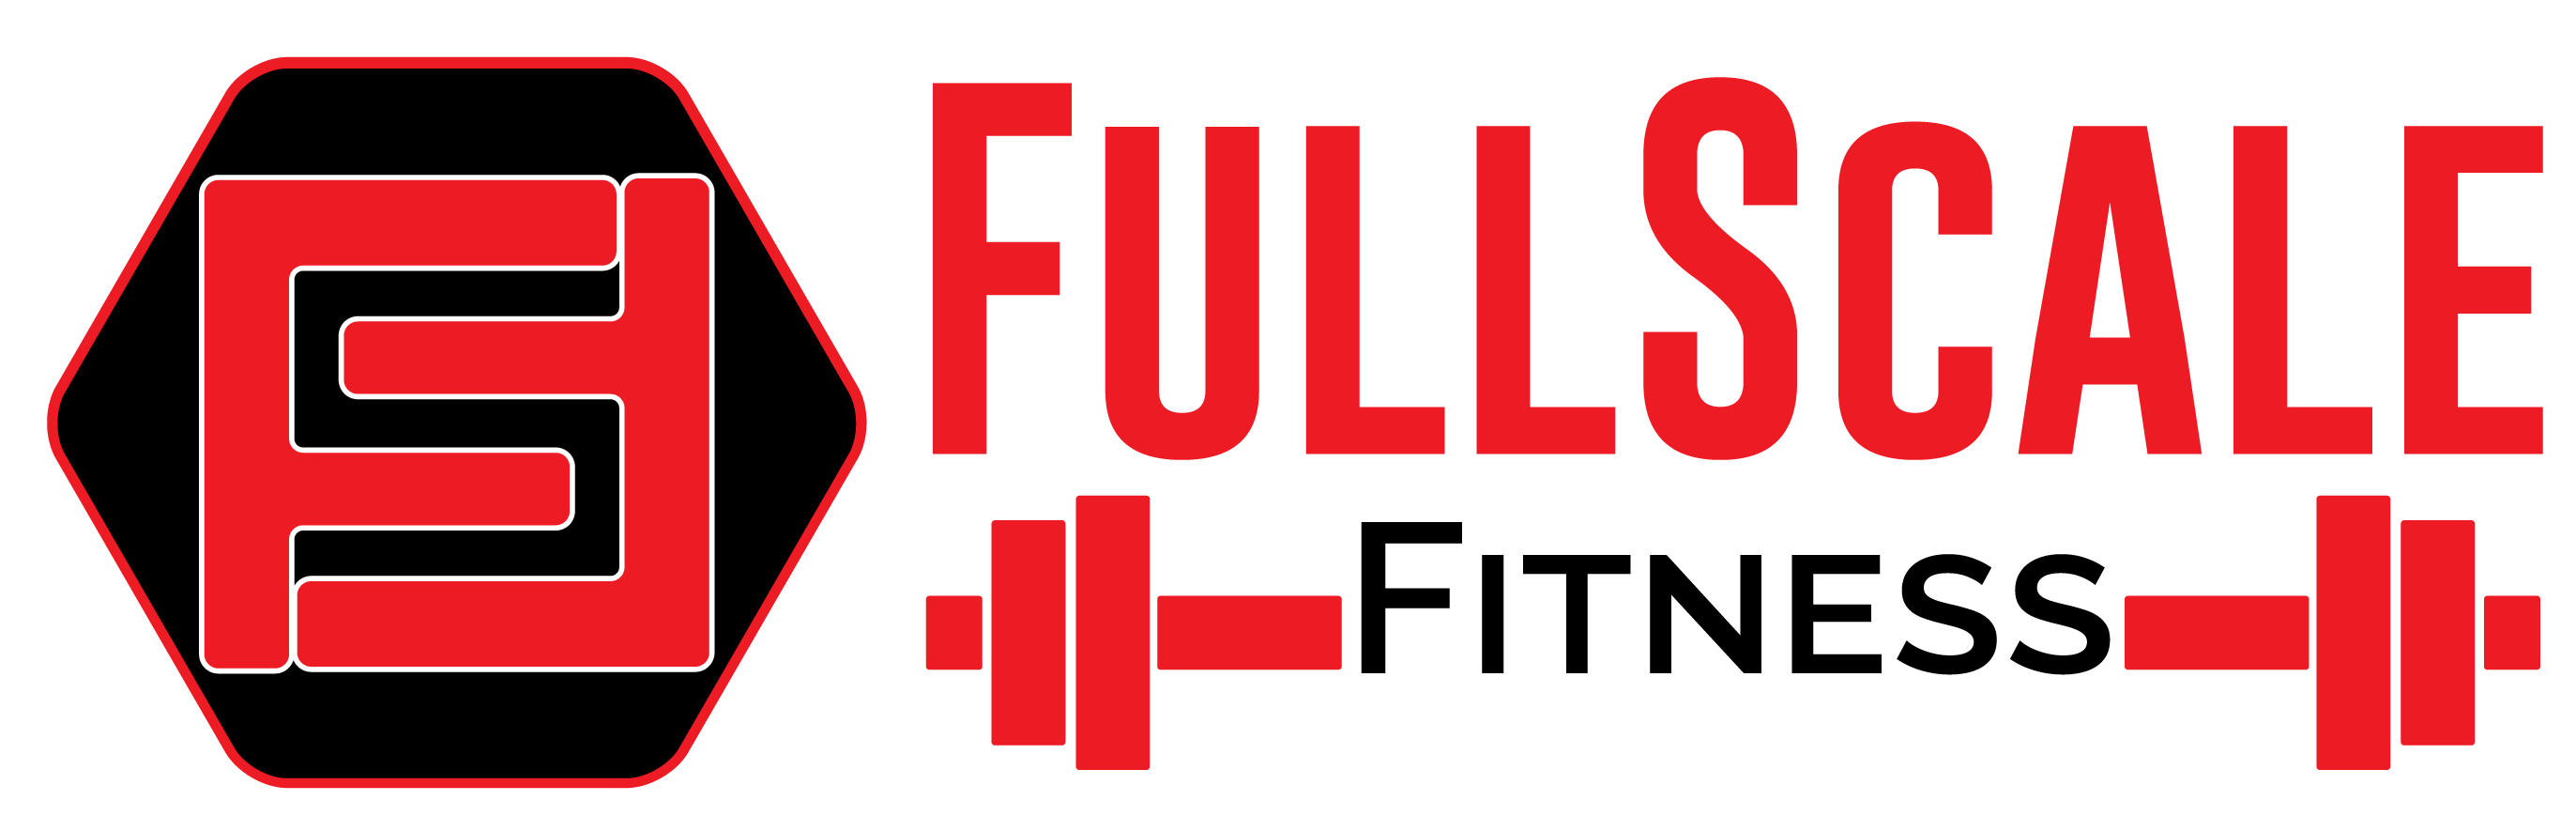 FullScaleFitness